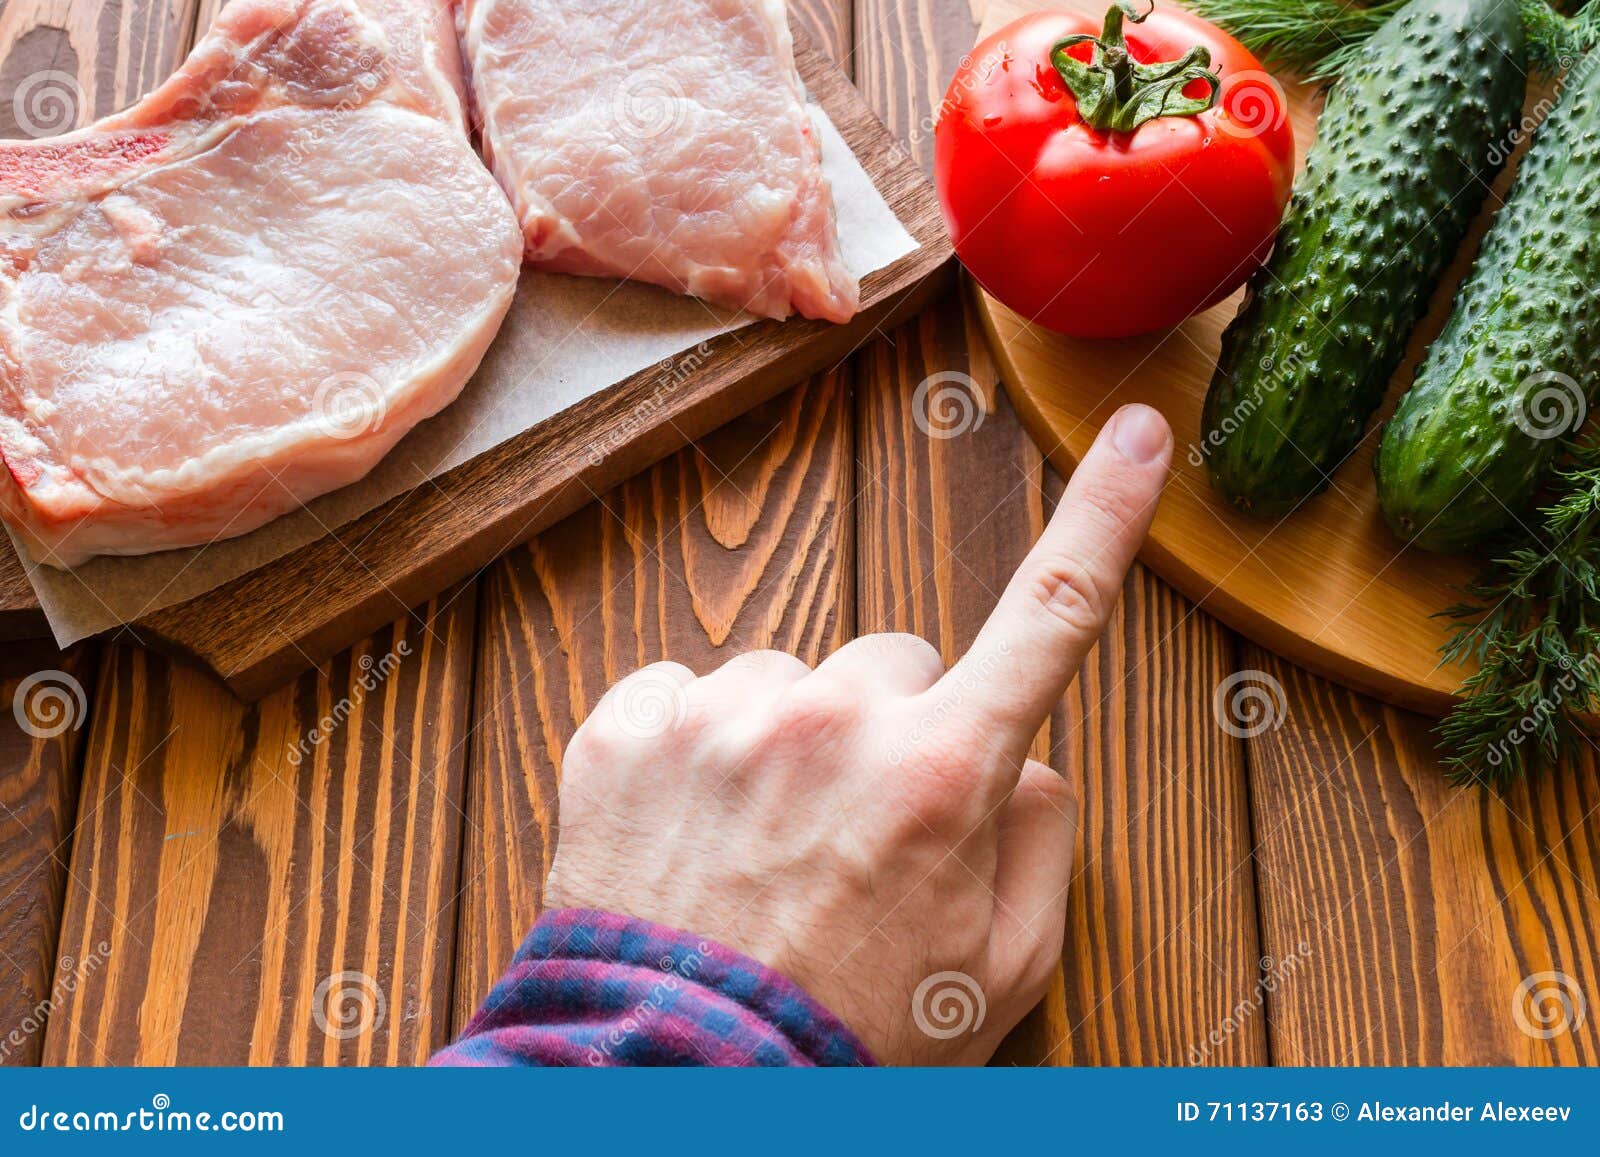 Можно ли человеку есть мясо. Отказ от мясной пищи. Мясо. Вместо мяса овощи. Откажись от мяса.